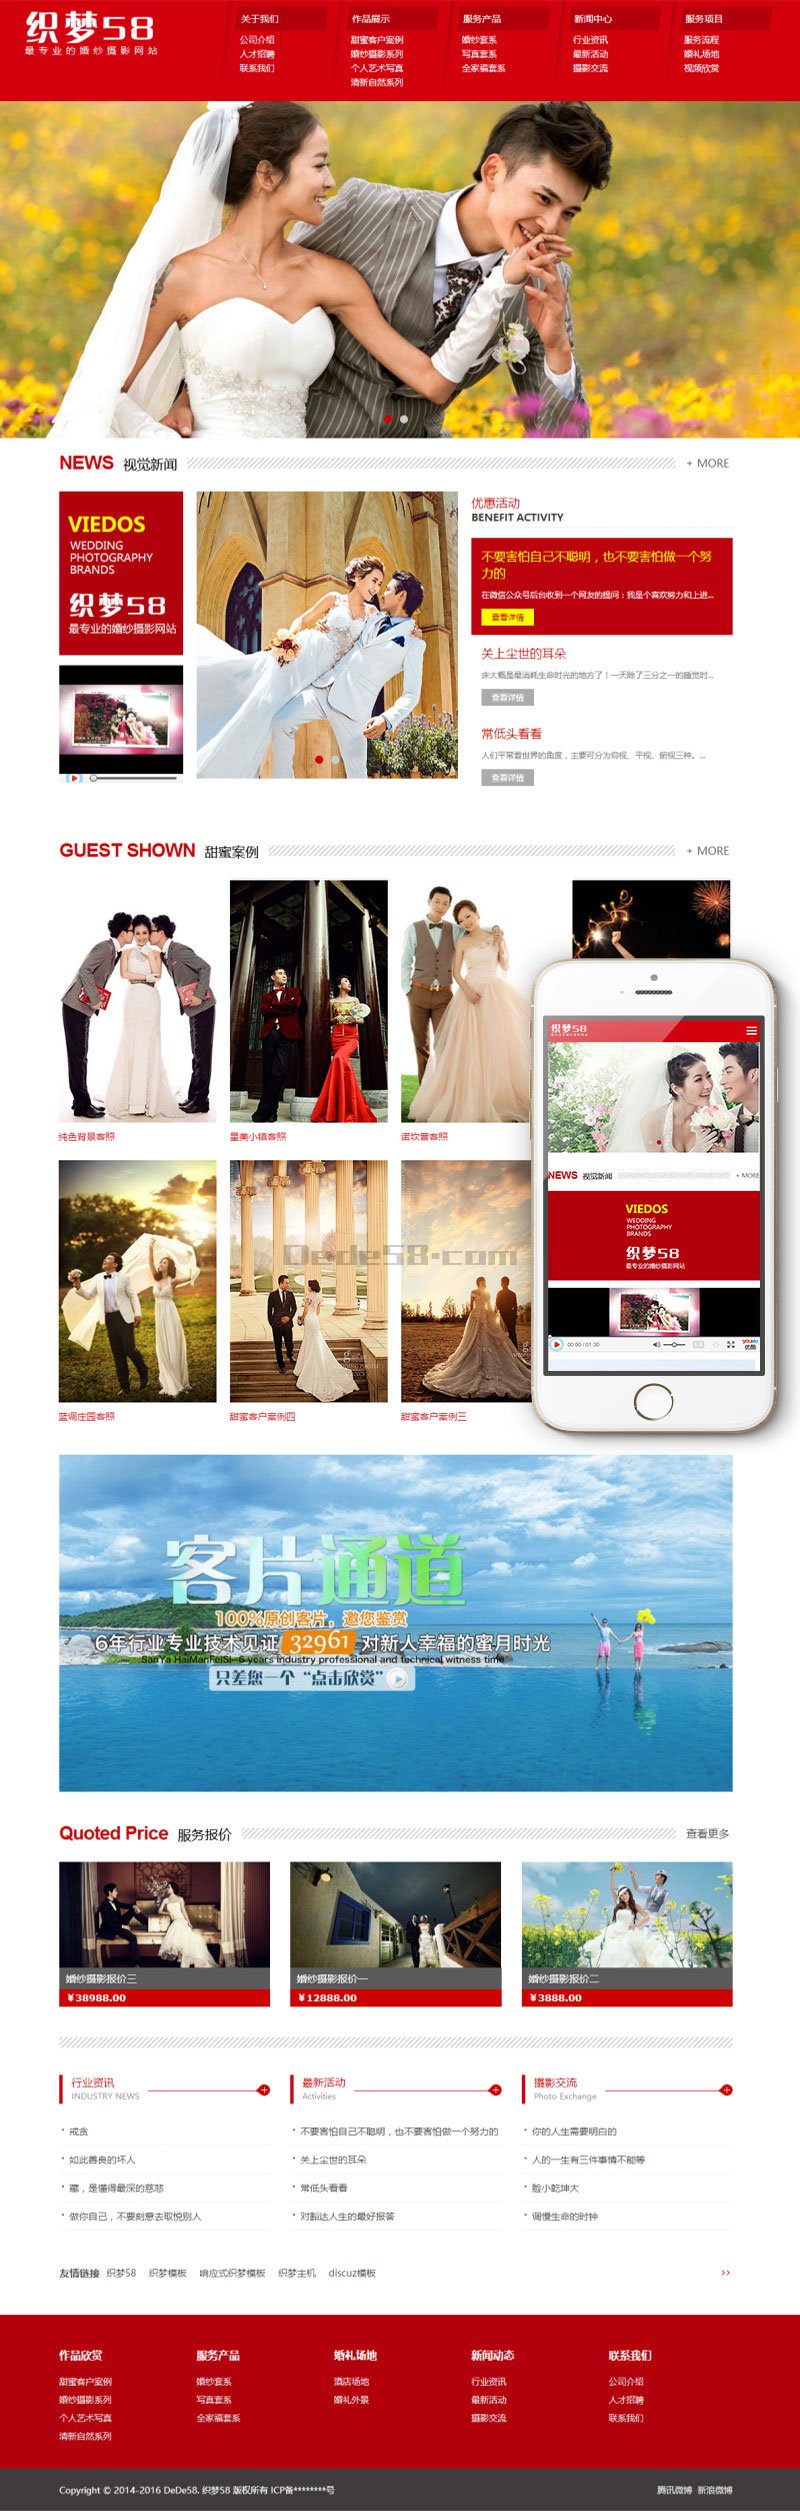 响应式婚纱摄影设计类网站织梦模板(自适应设备) 第2张